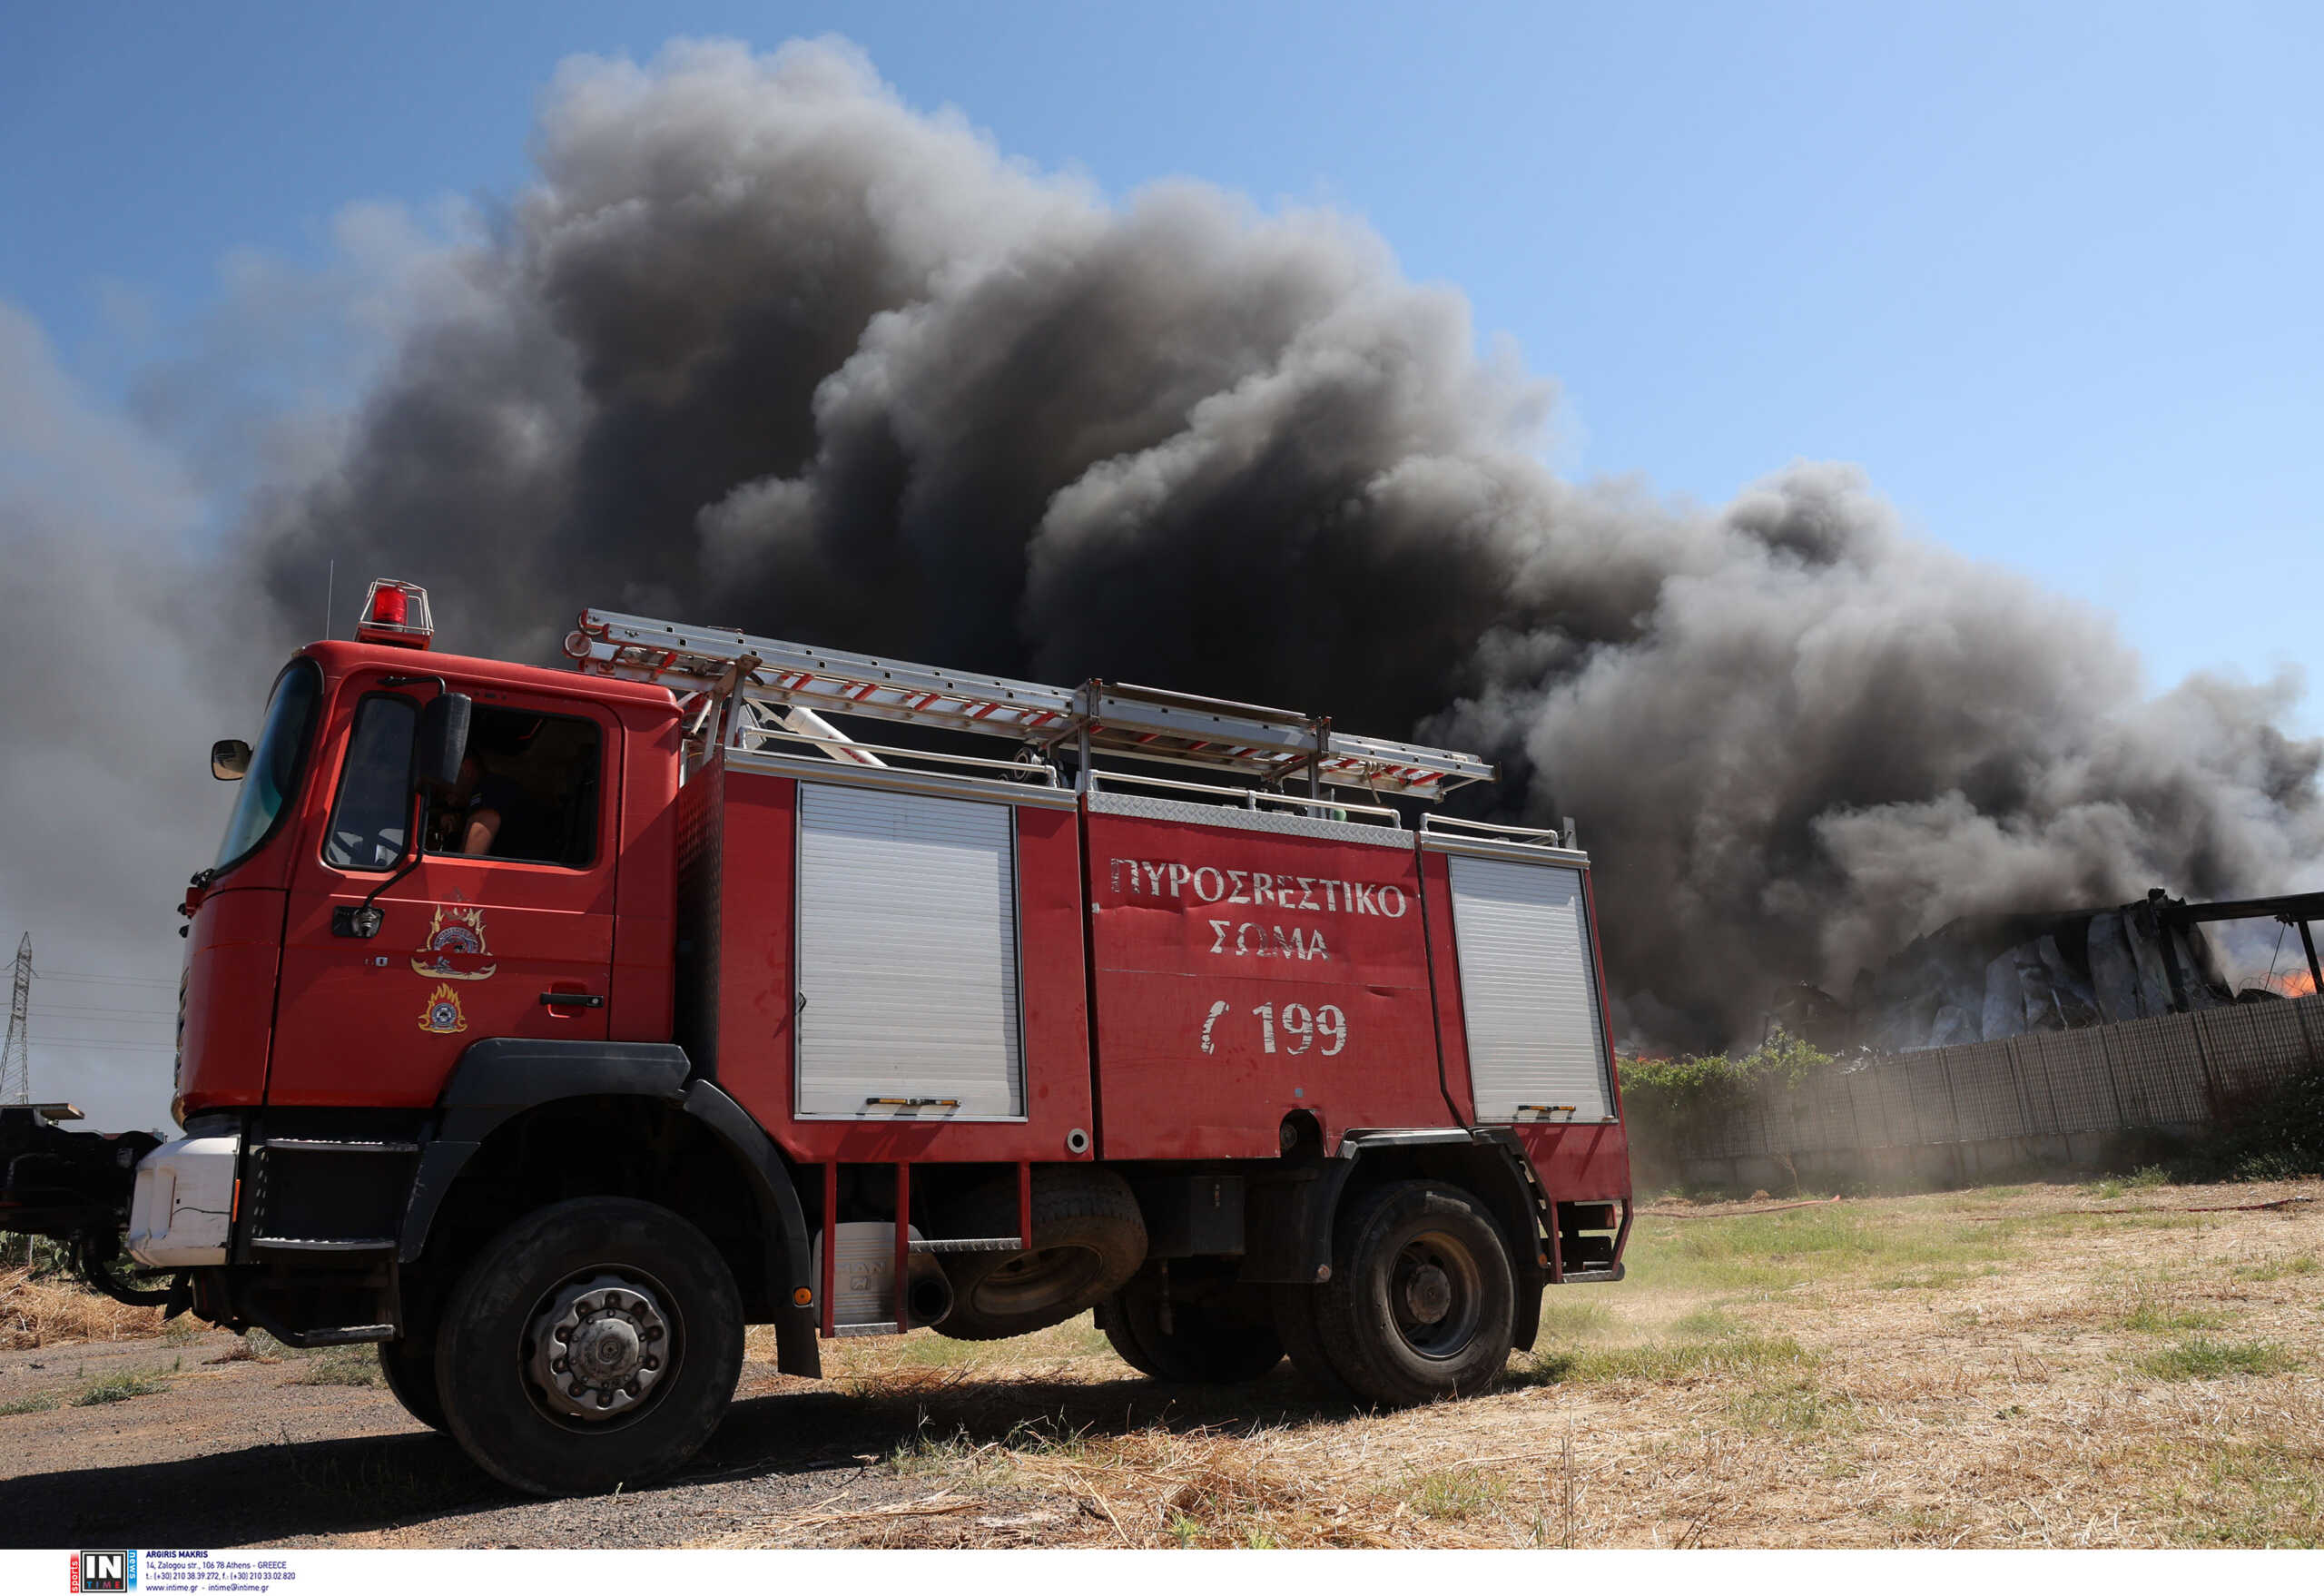 Σε ποιες περιοχές θα είναι πολύ υψηλός κίνδυνος φωτιάς και αύριο – Σε γενική επιφυλακή η Πυροσβεστική σε όλη την Ελλάδα